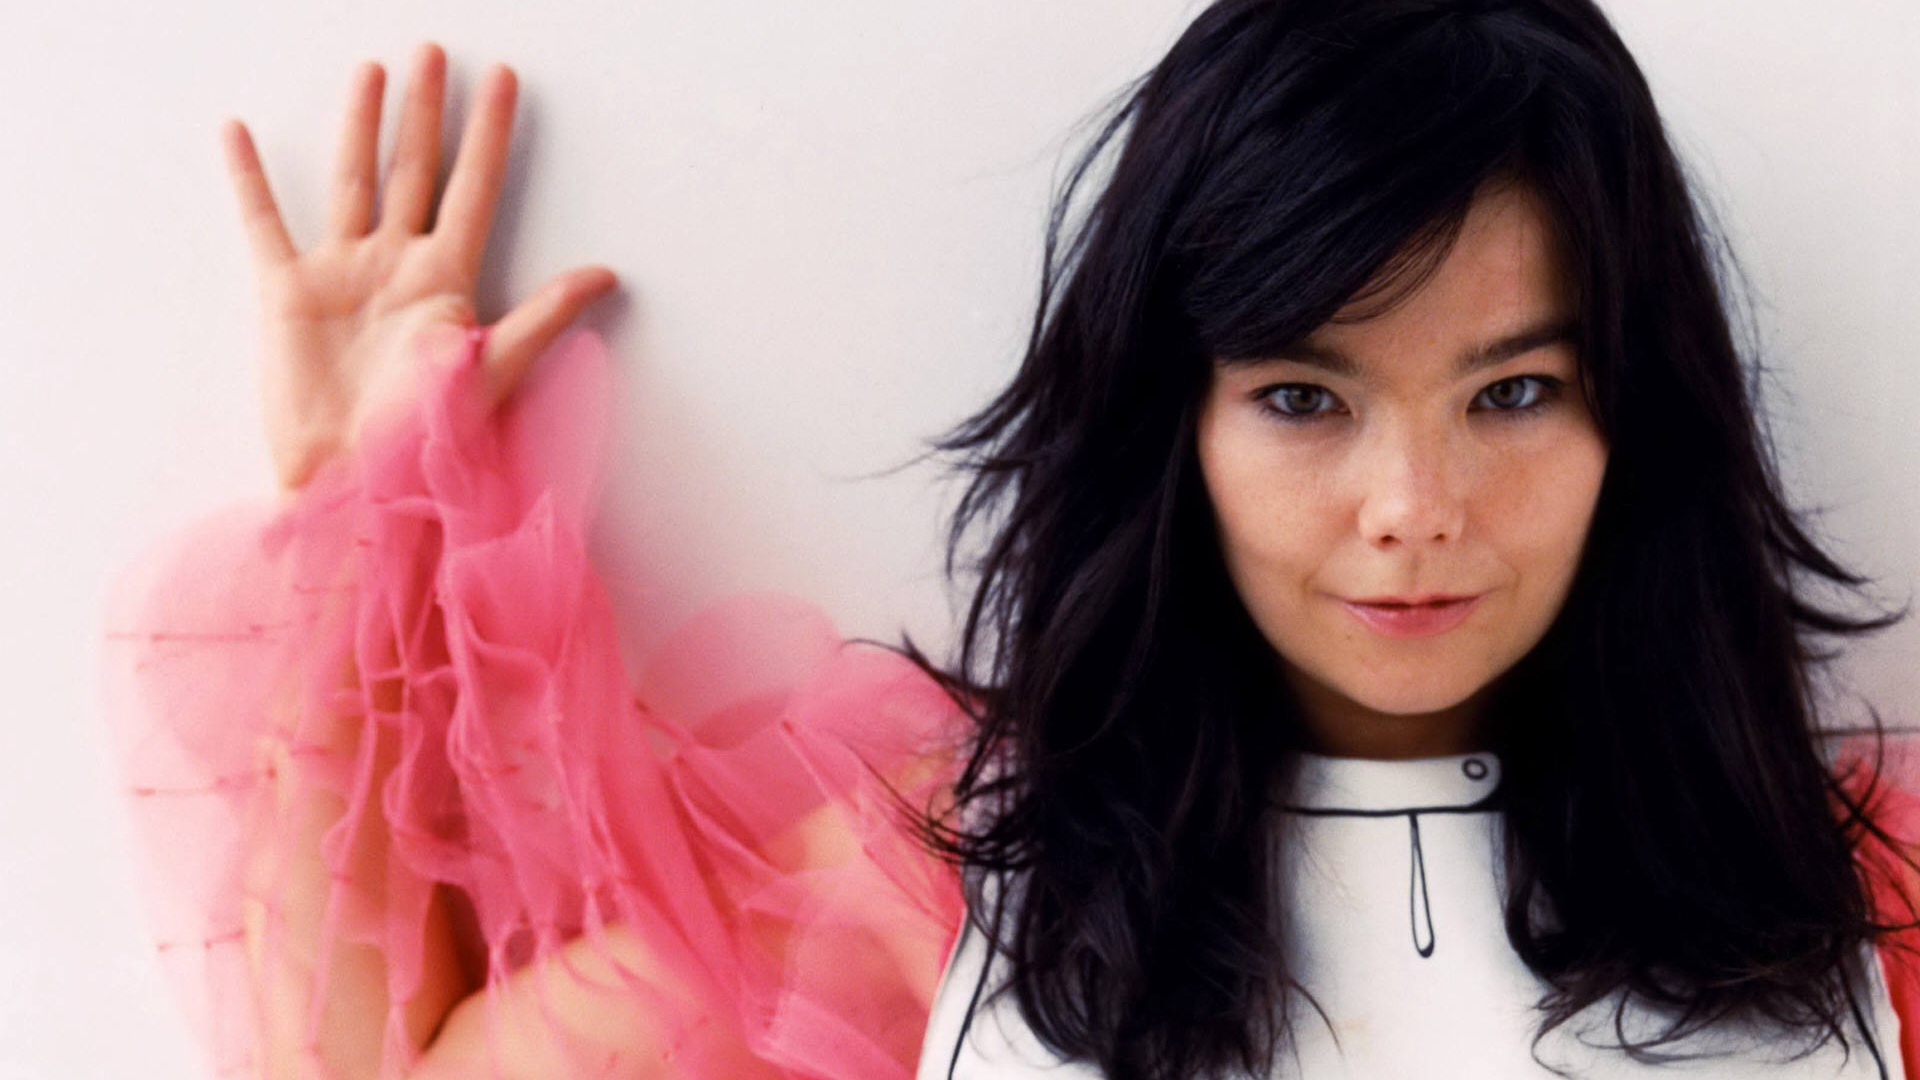 Die besten Björk-Hintergründe für den Telefonbildschirm